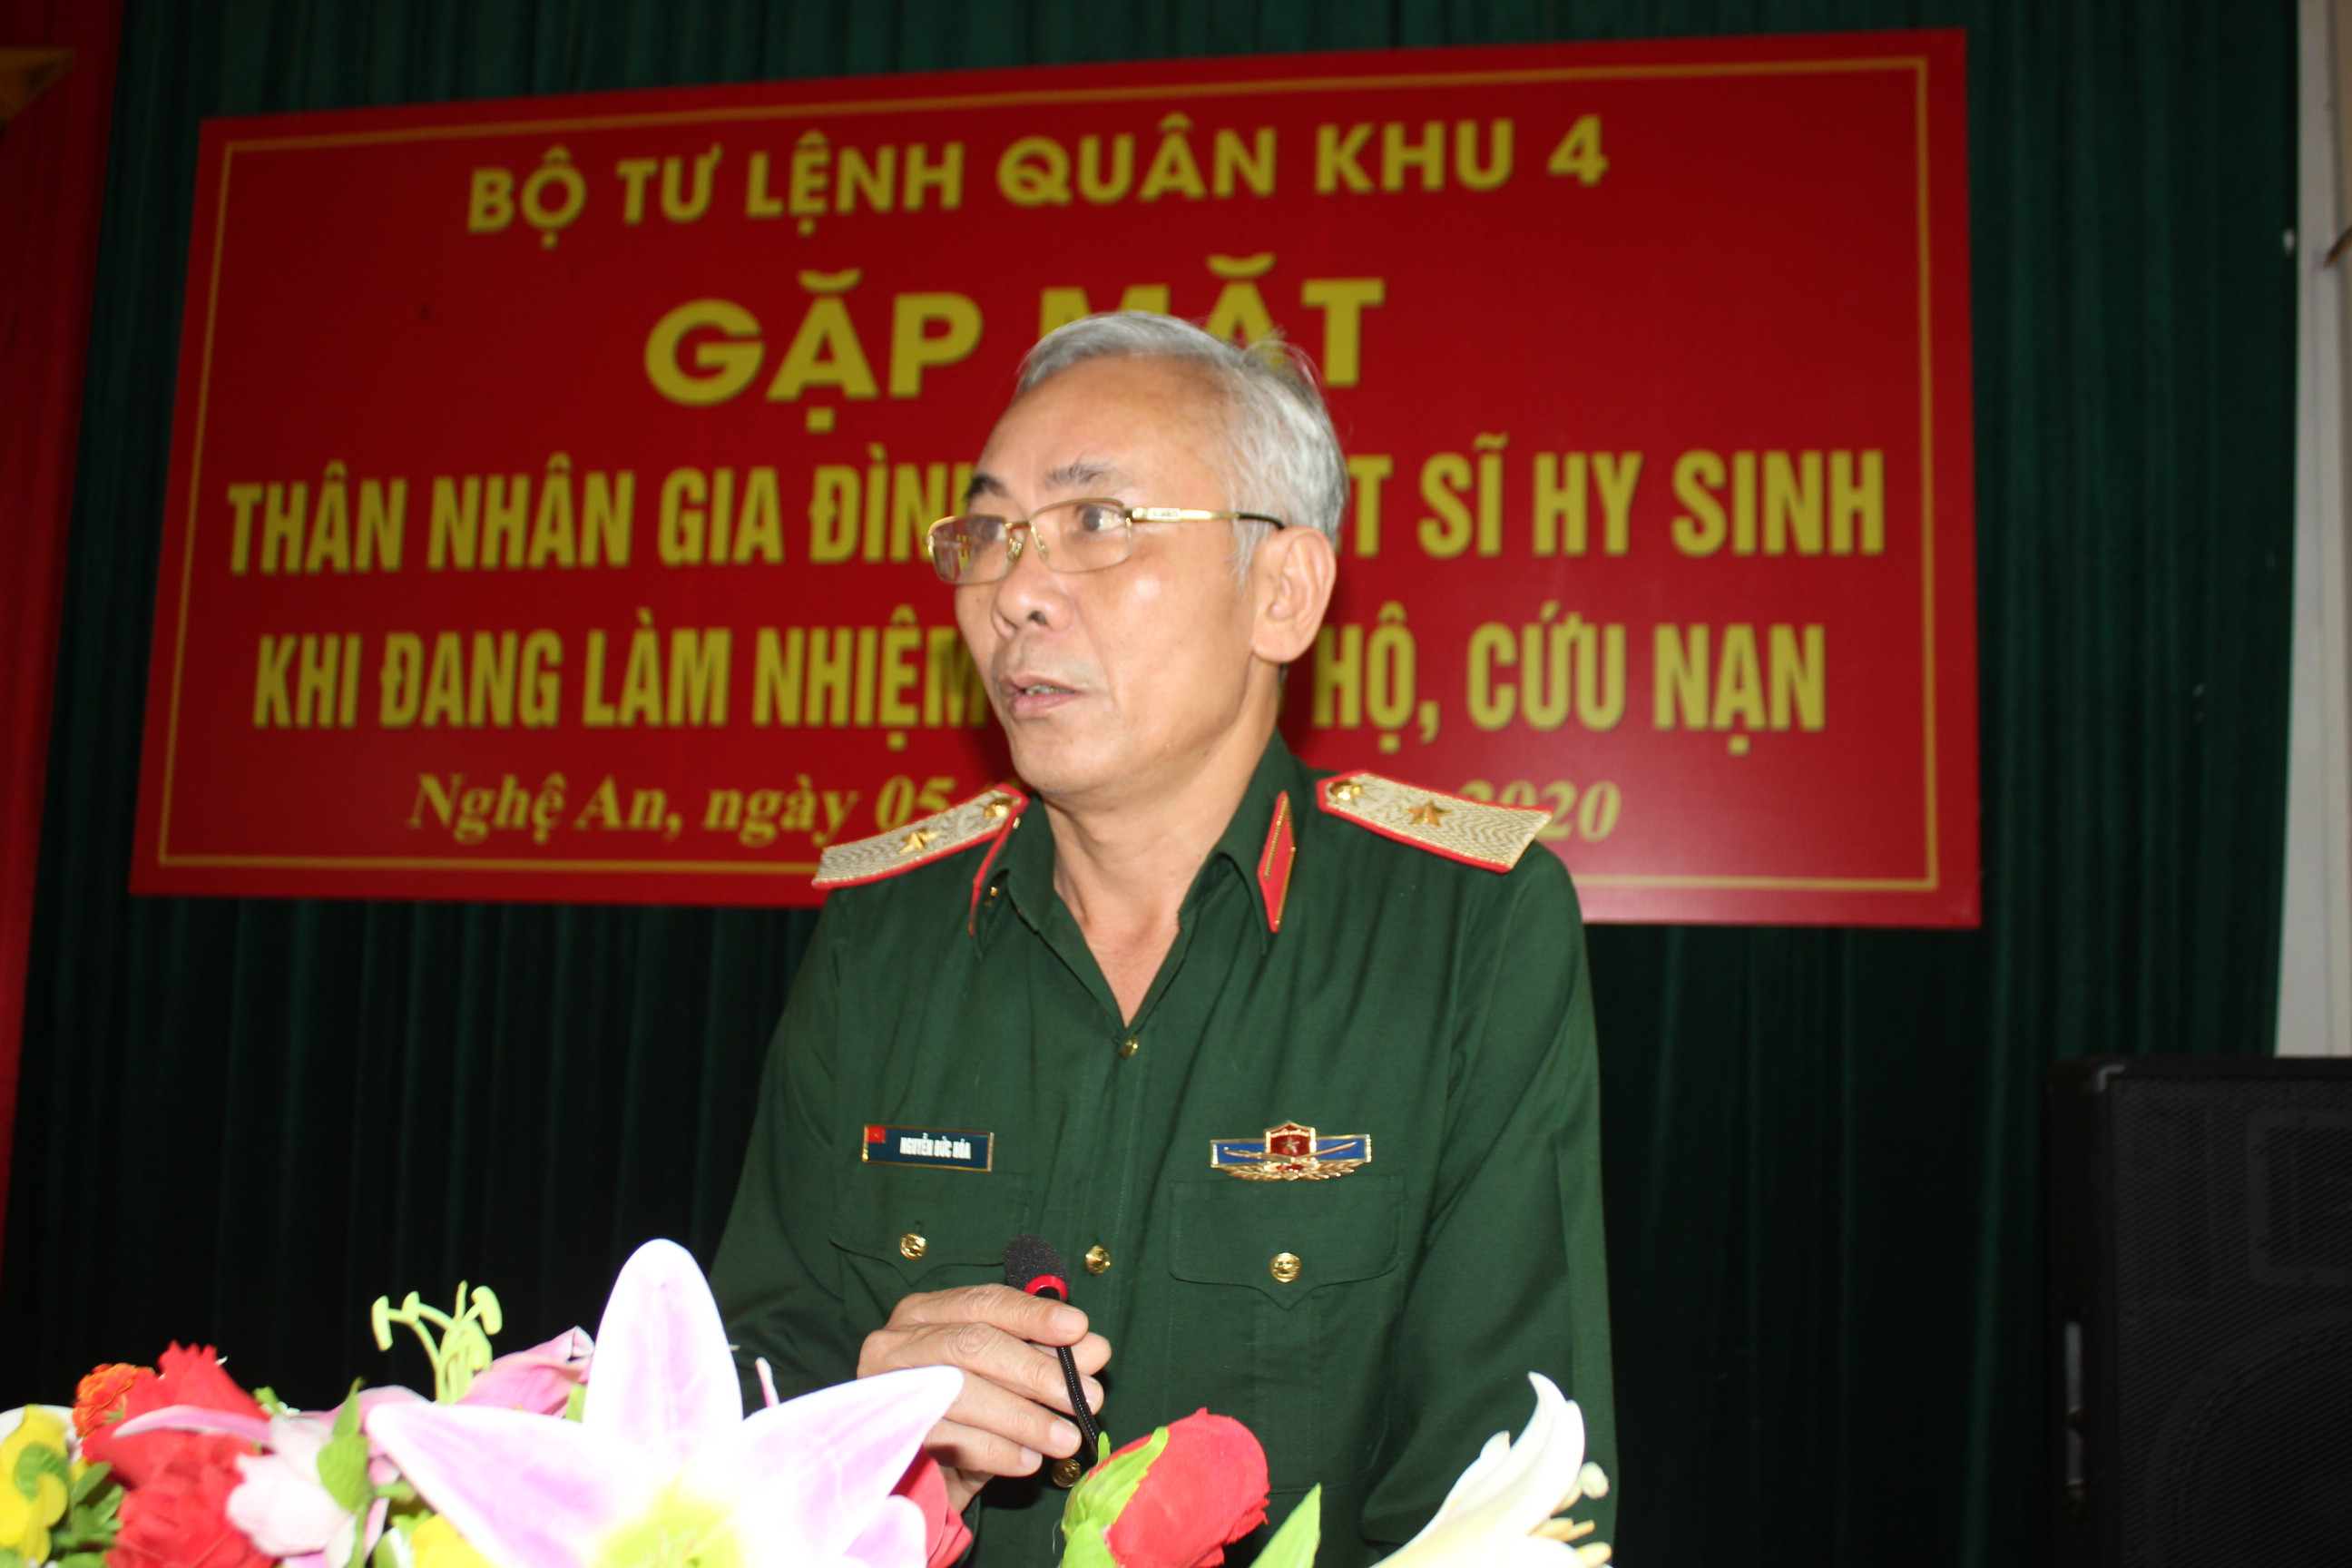 Thiếu tướng Nguyễn Đức Hóa, Ủy viên Thường vụ Đảng ủy, Phó Chính ủy Quân khu phát biểu tại buổi gặp mặt